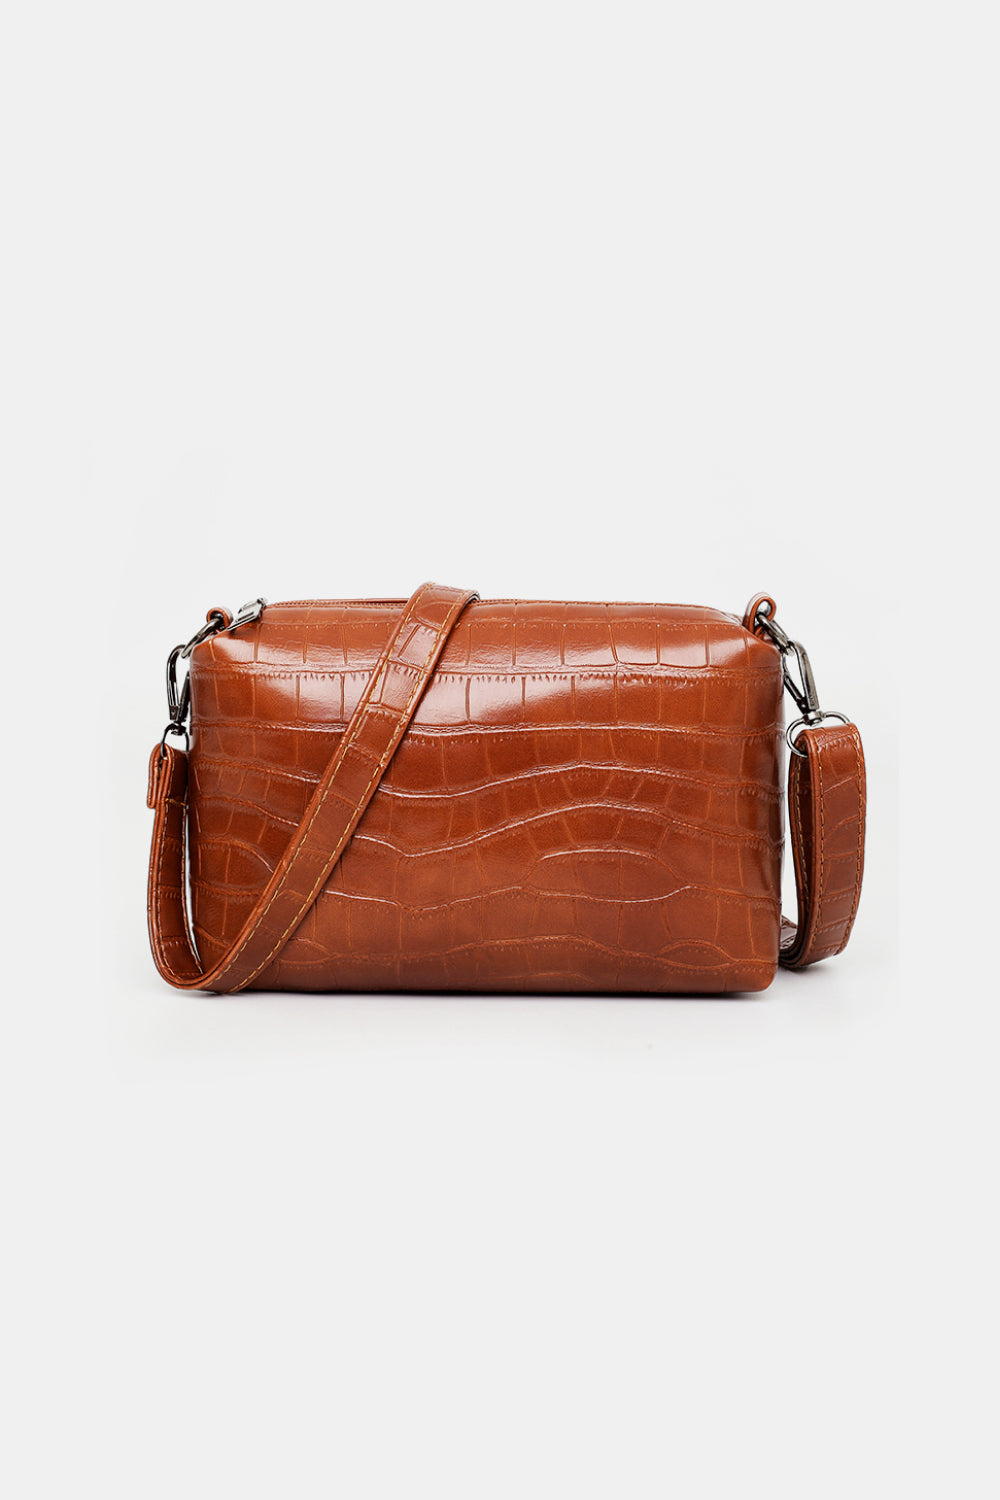 4-Piece Leather Bag Set_5